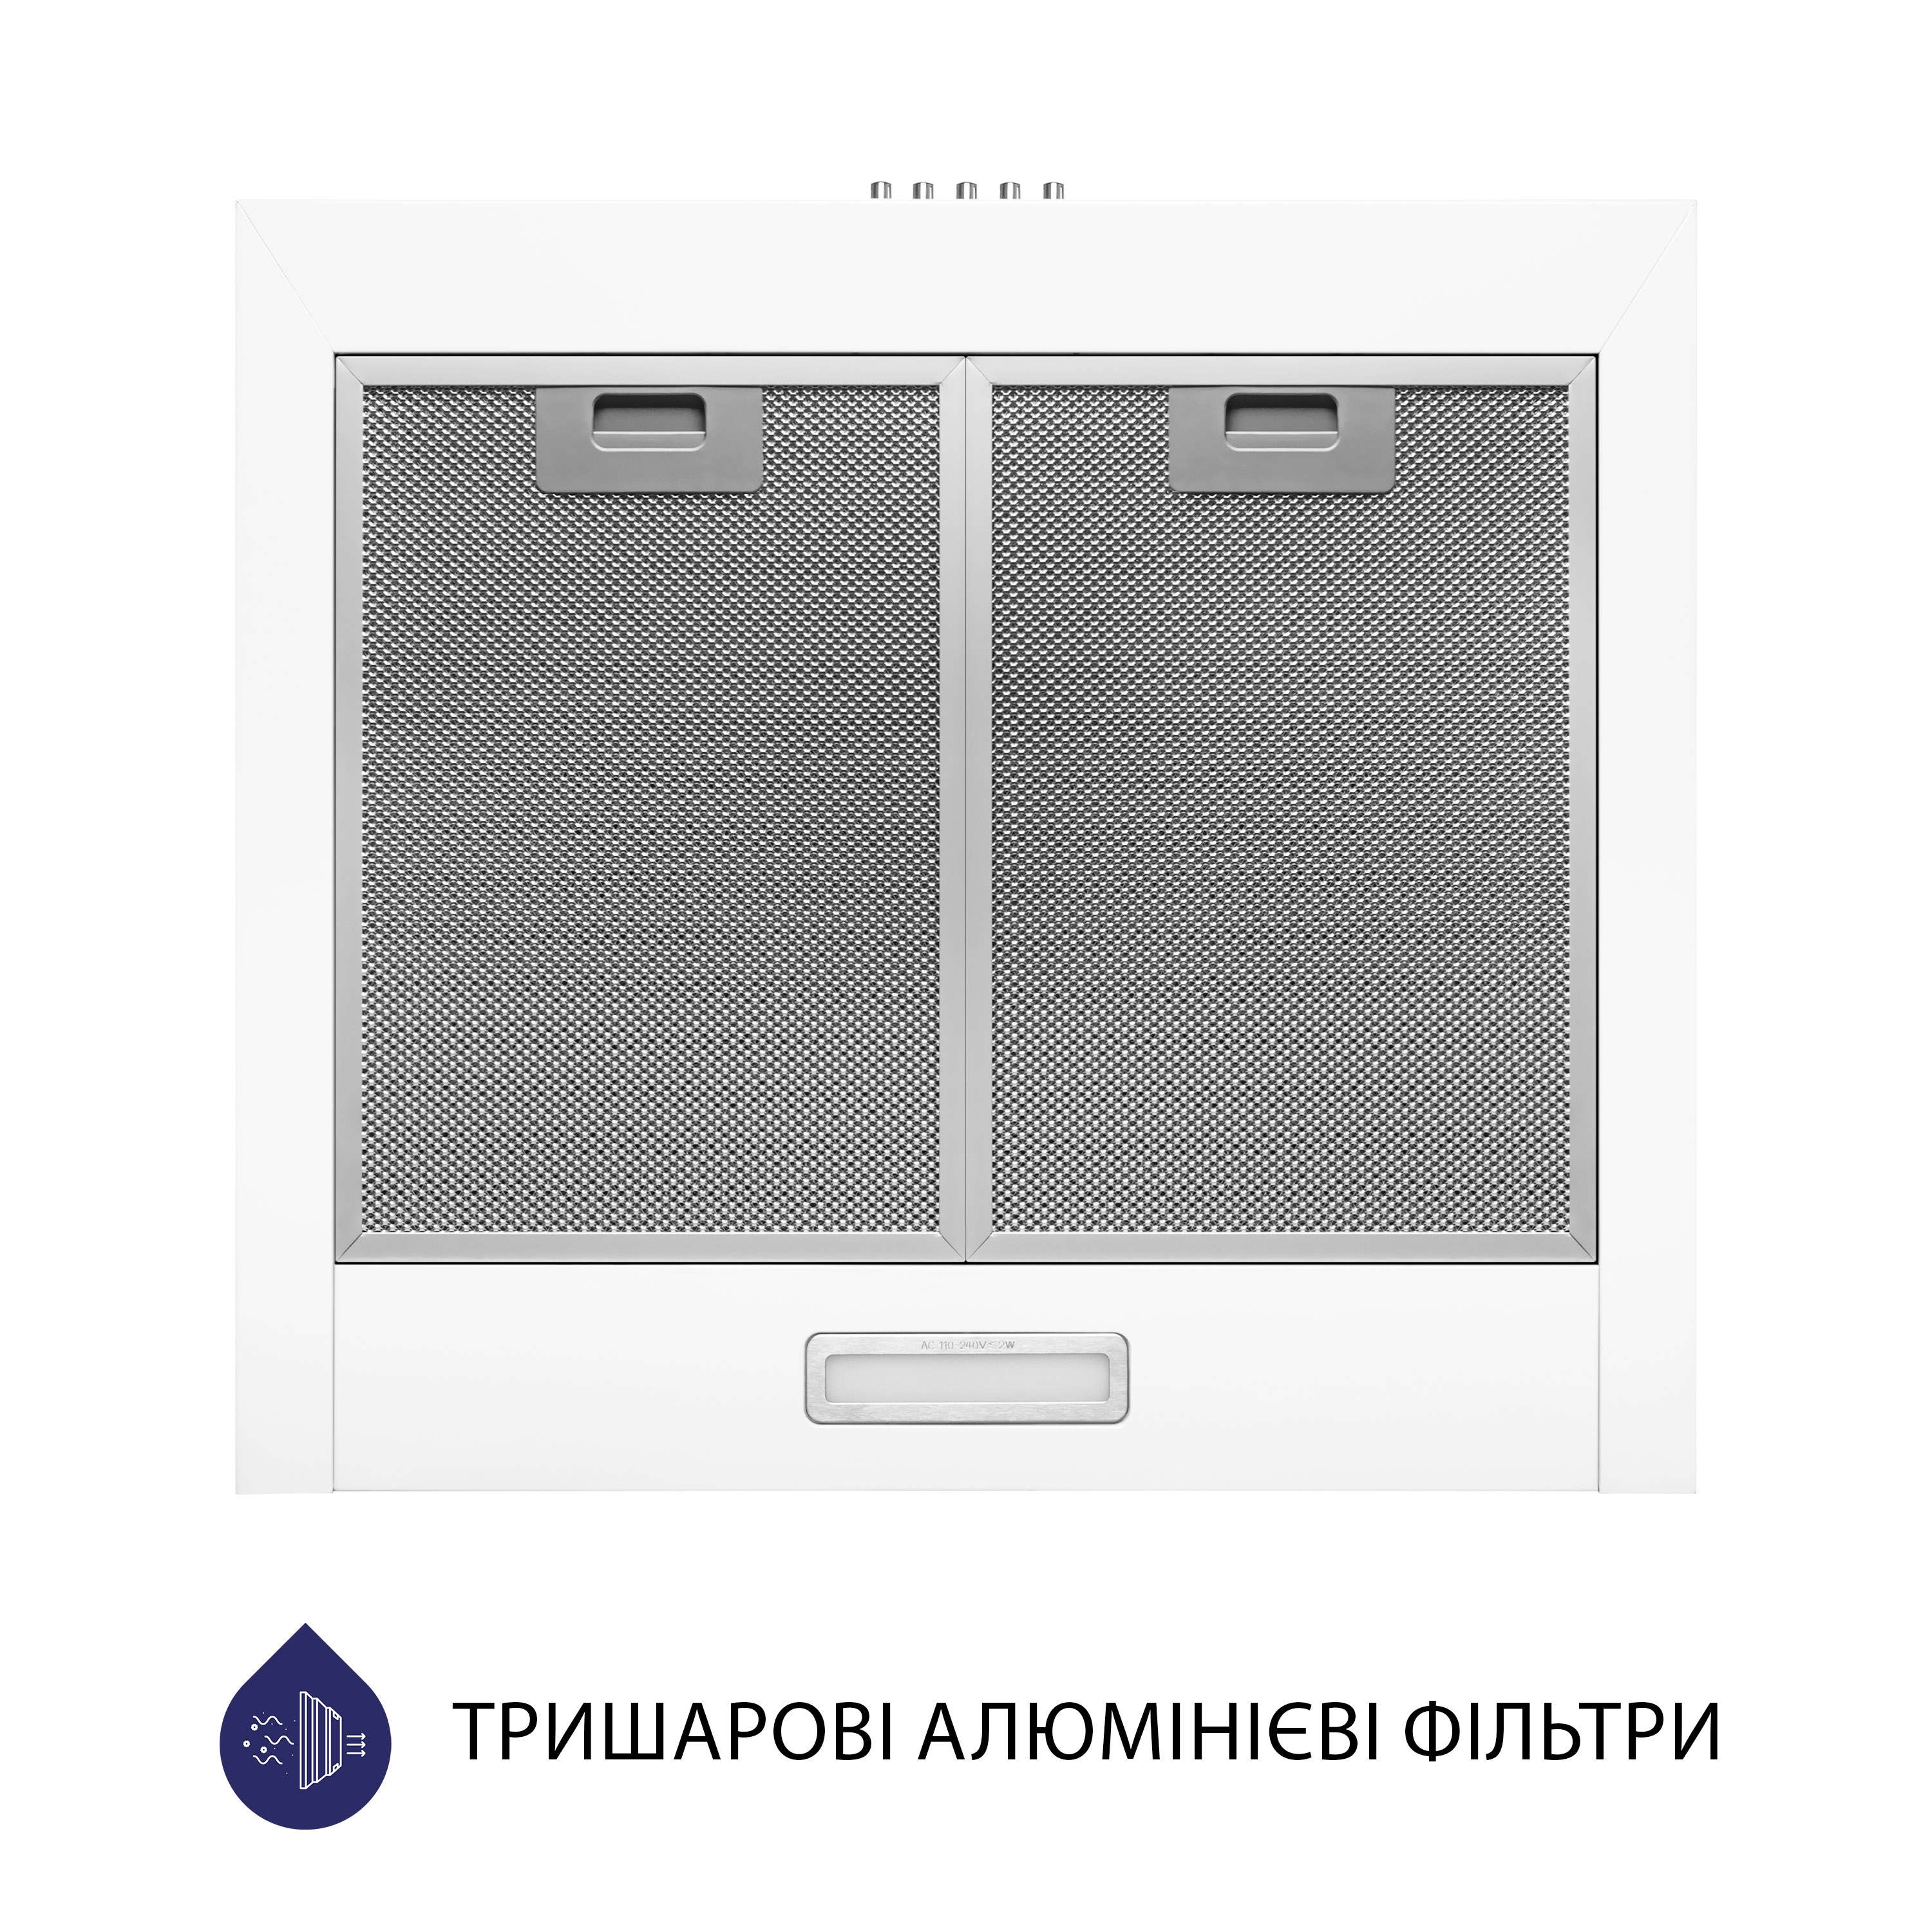 Витяжка кухонная купольная Minola HK 5214 WH 700 LED отзывы - изображения 5